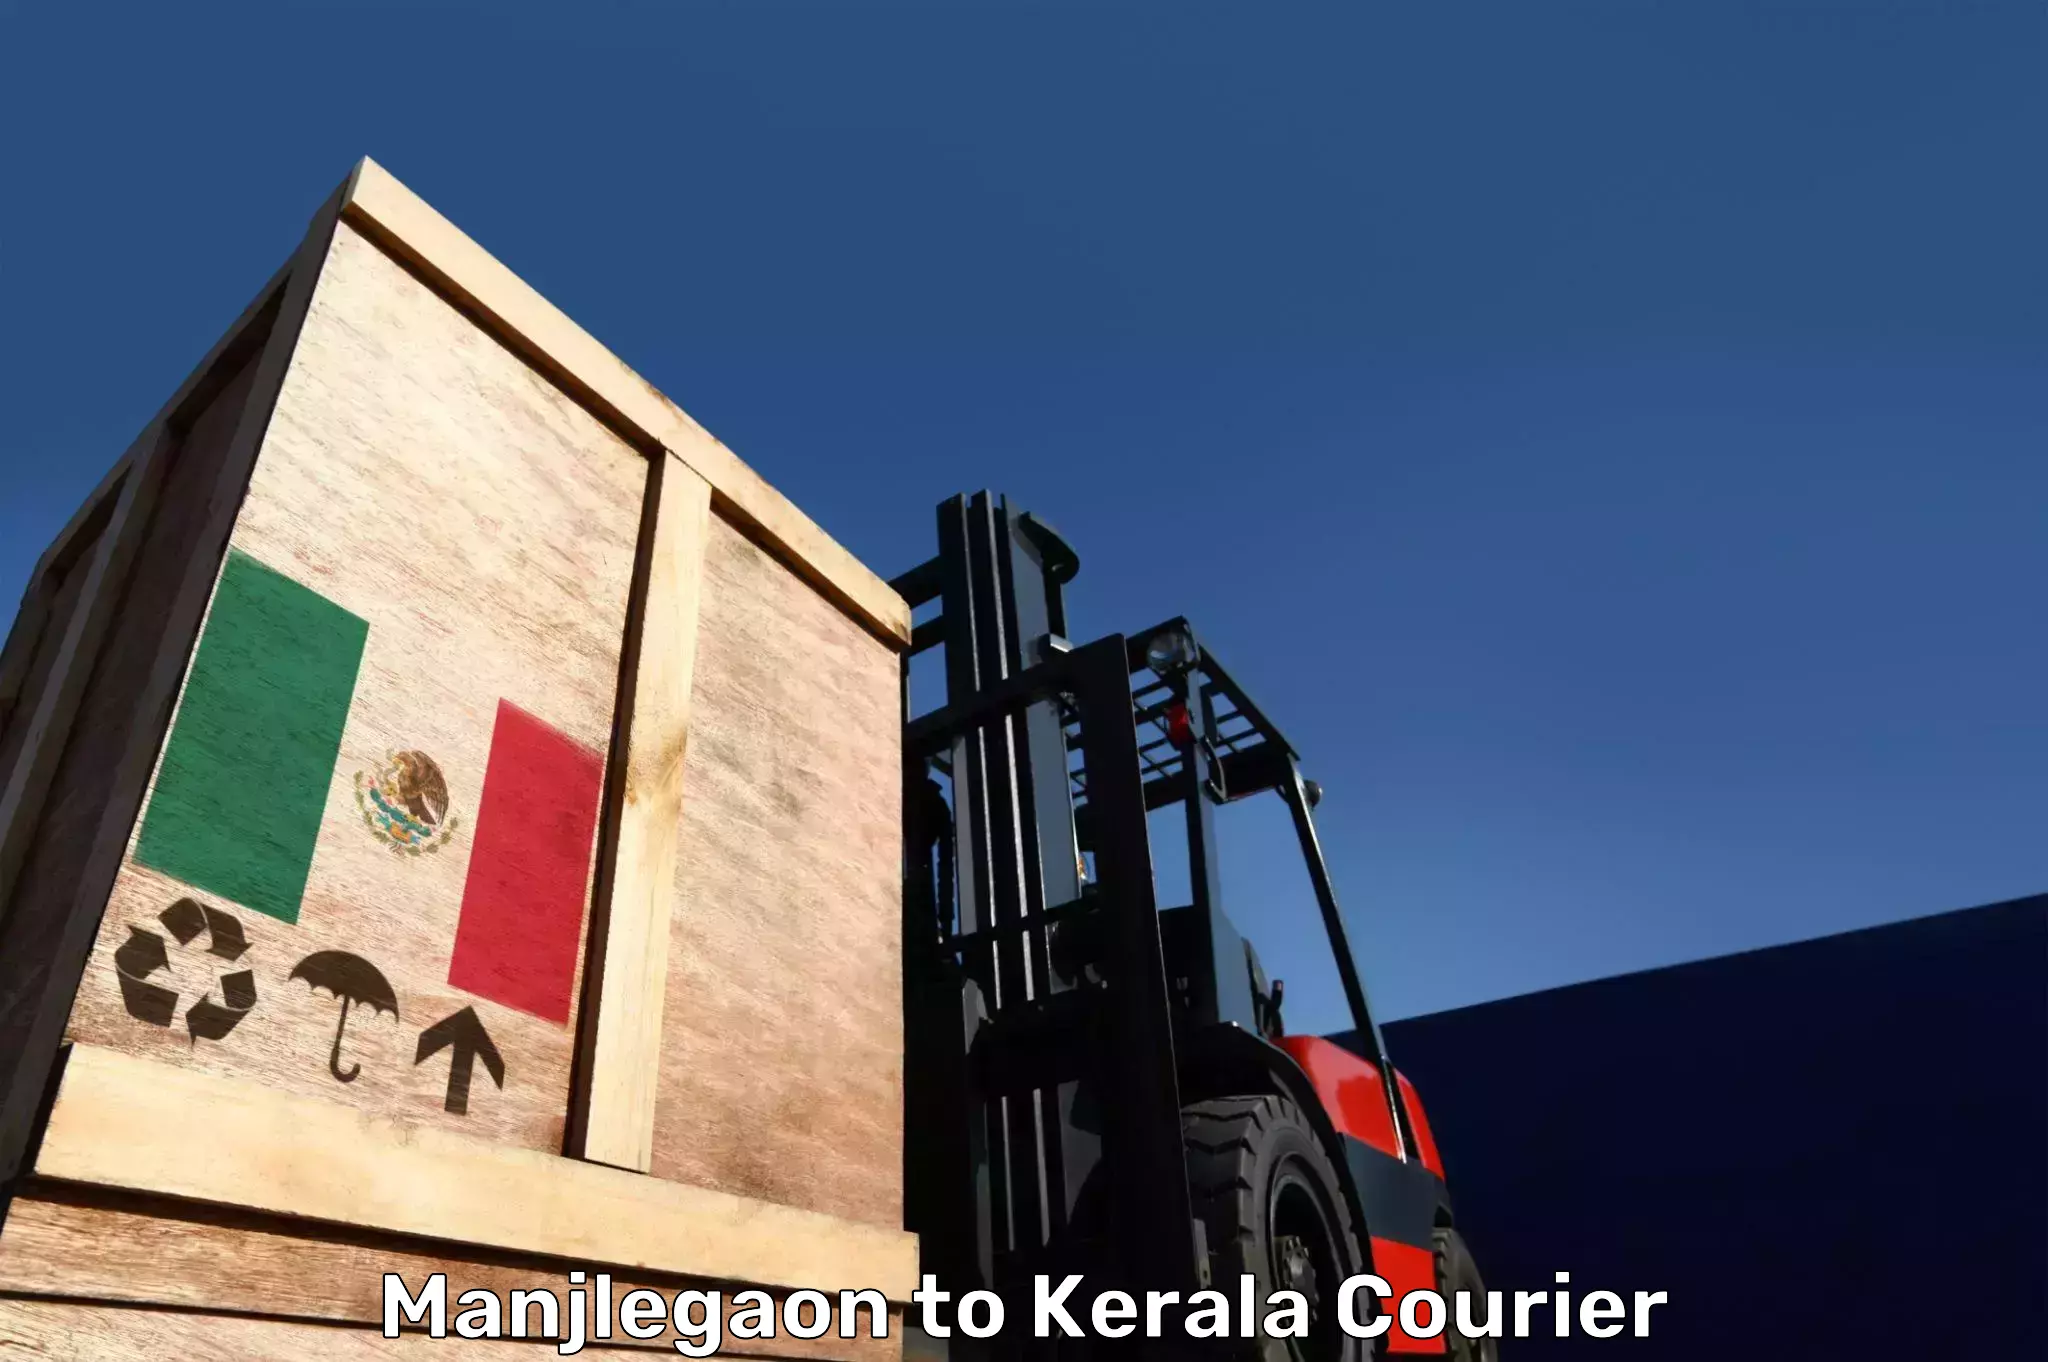 Baggage shipping rates calculator Manjlegaon to Manthuka